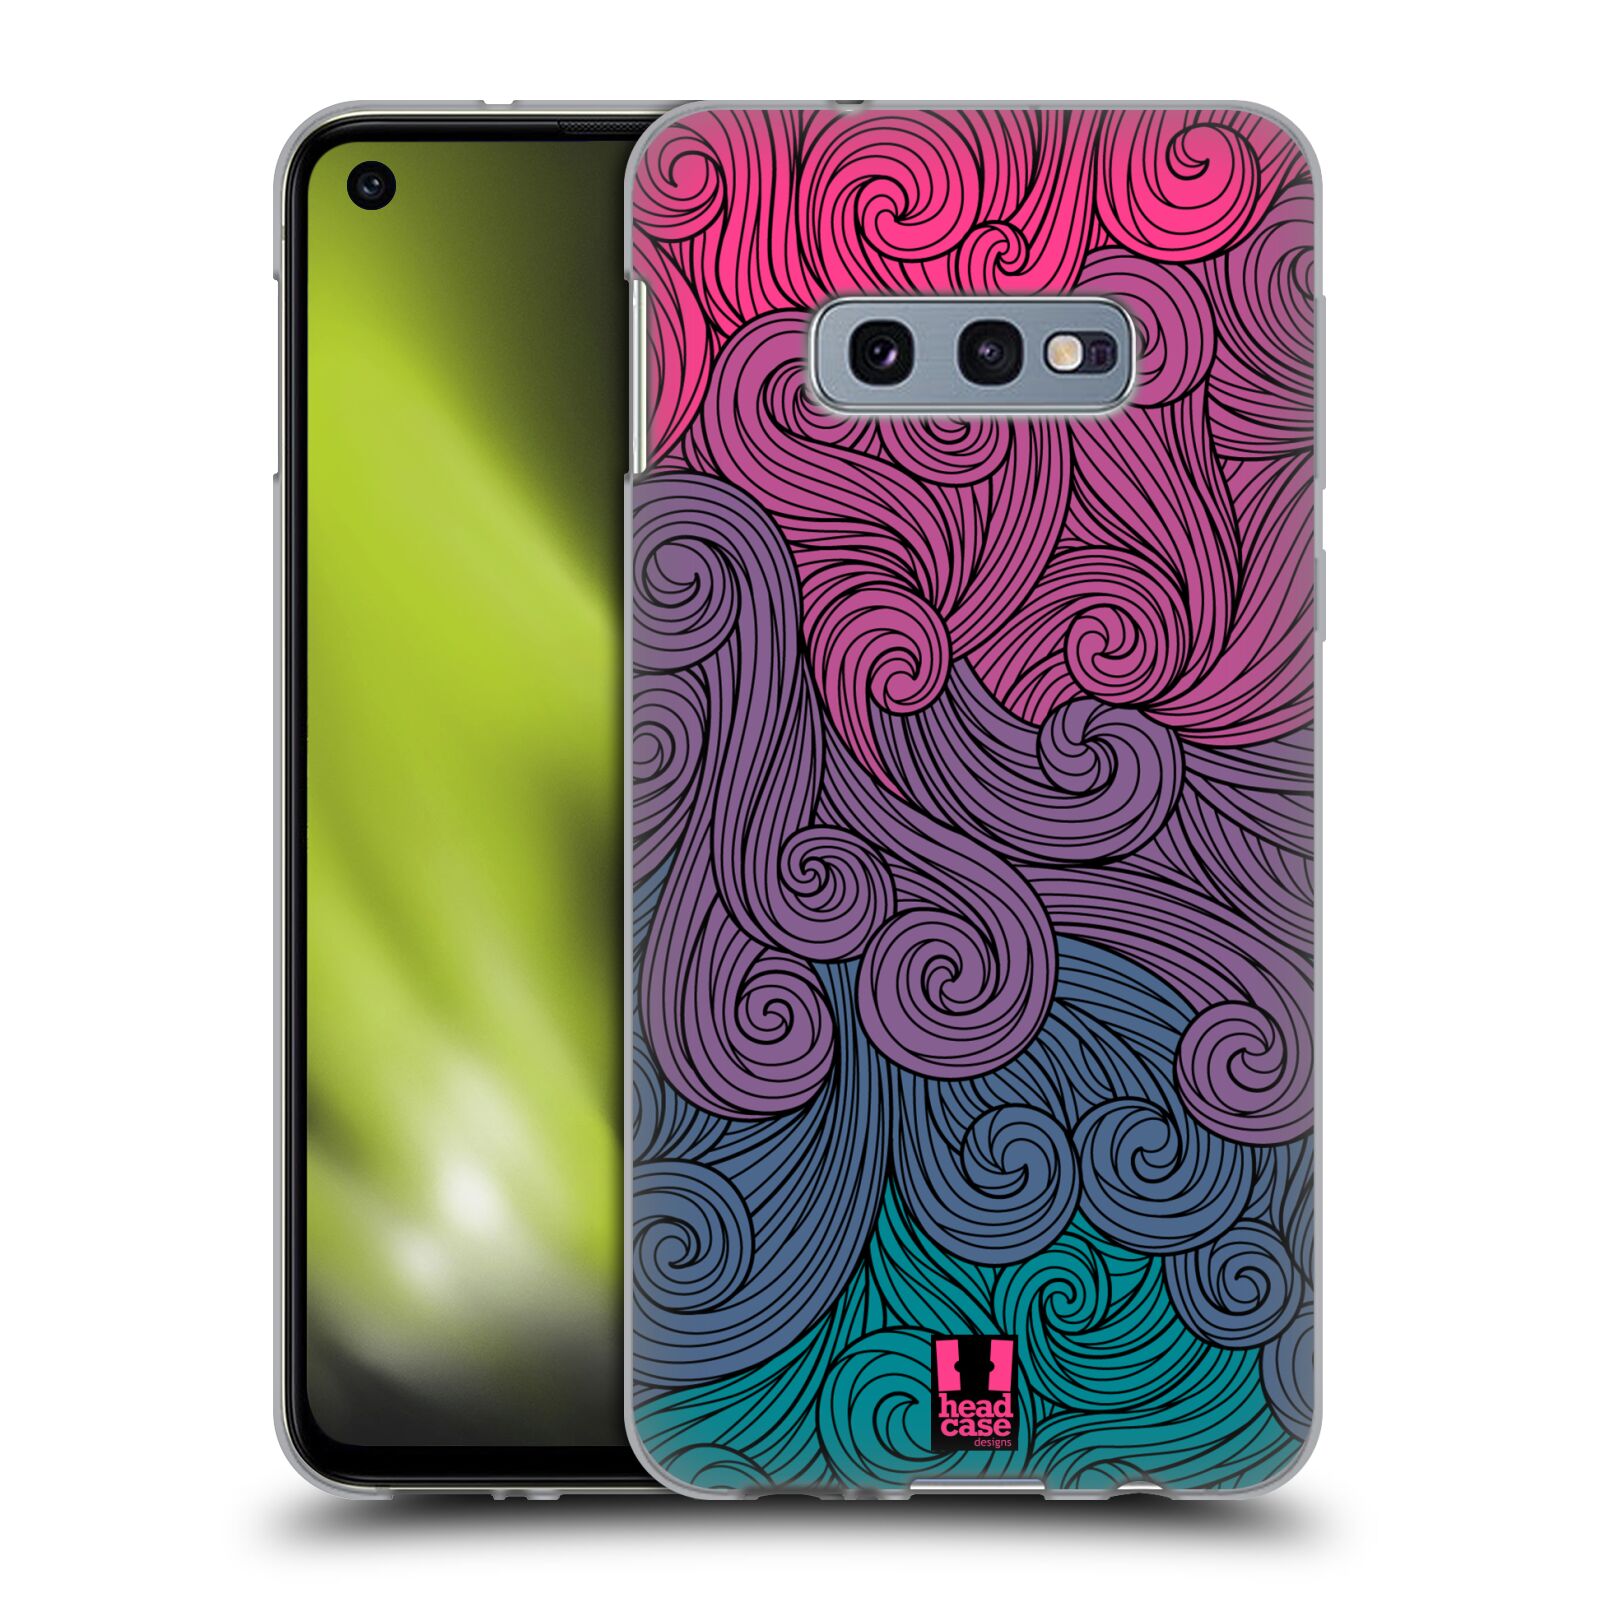 Silikonové pouzdro na mobil Samsung Galaxy S10e - Head Case - Swirls Hot Pink (Silikonový kryt, obal, pouzdro na mobilní telefon Samsung Galaxy S10e SM-G970 s motivem Swirls Hot Pink)